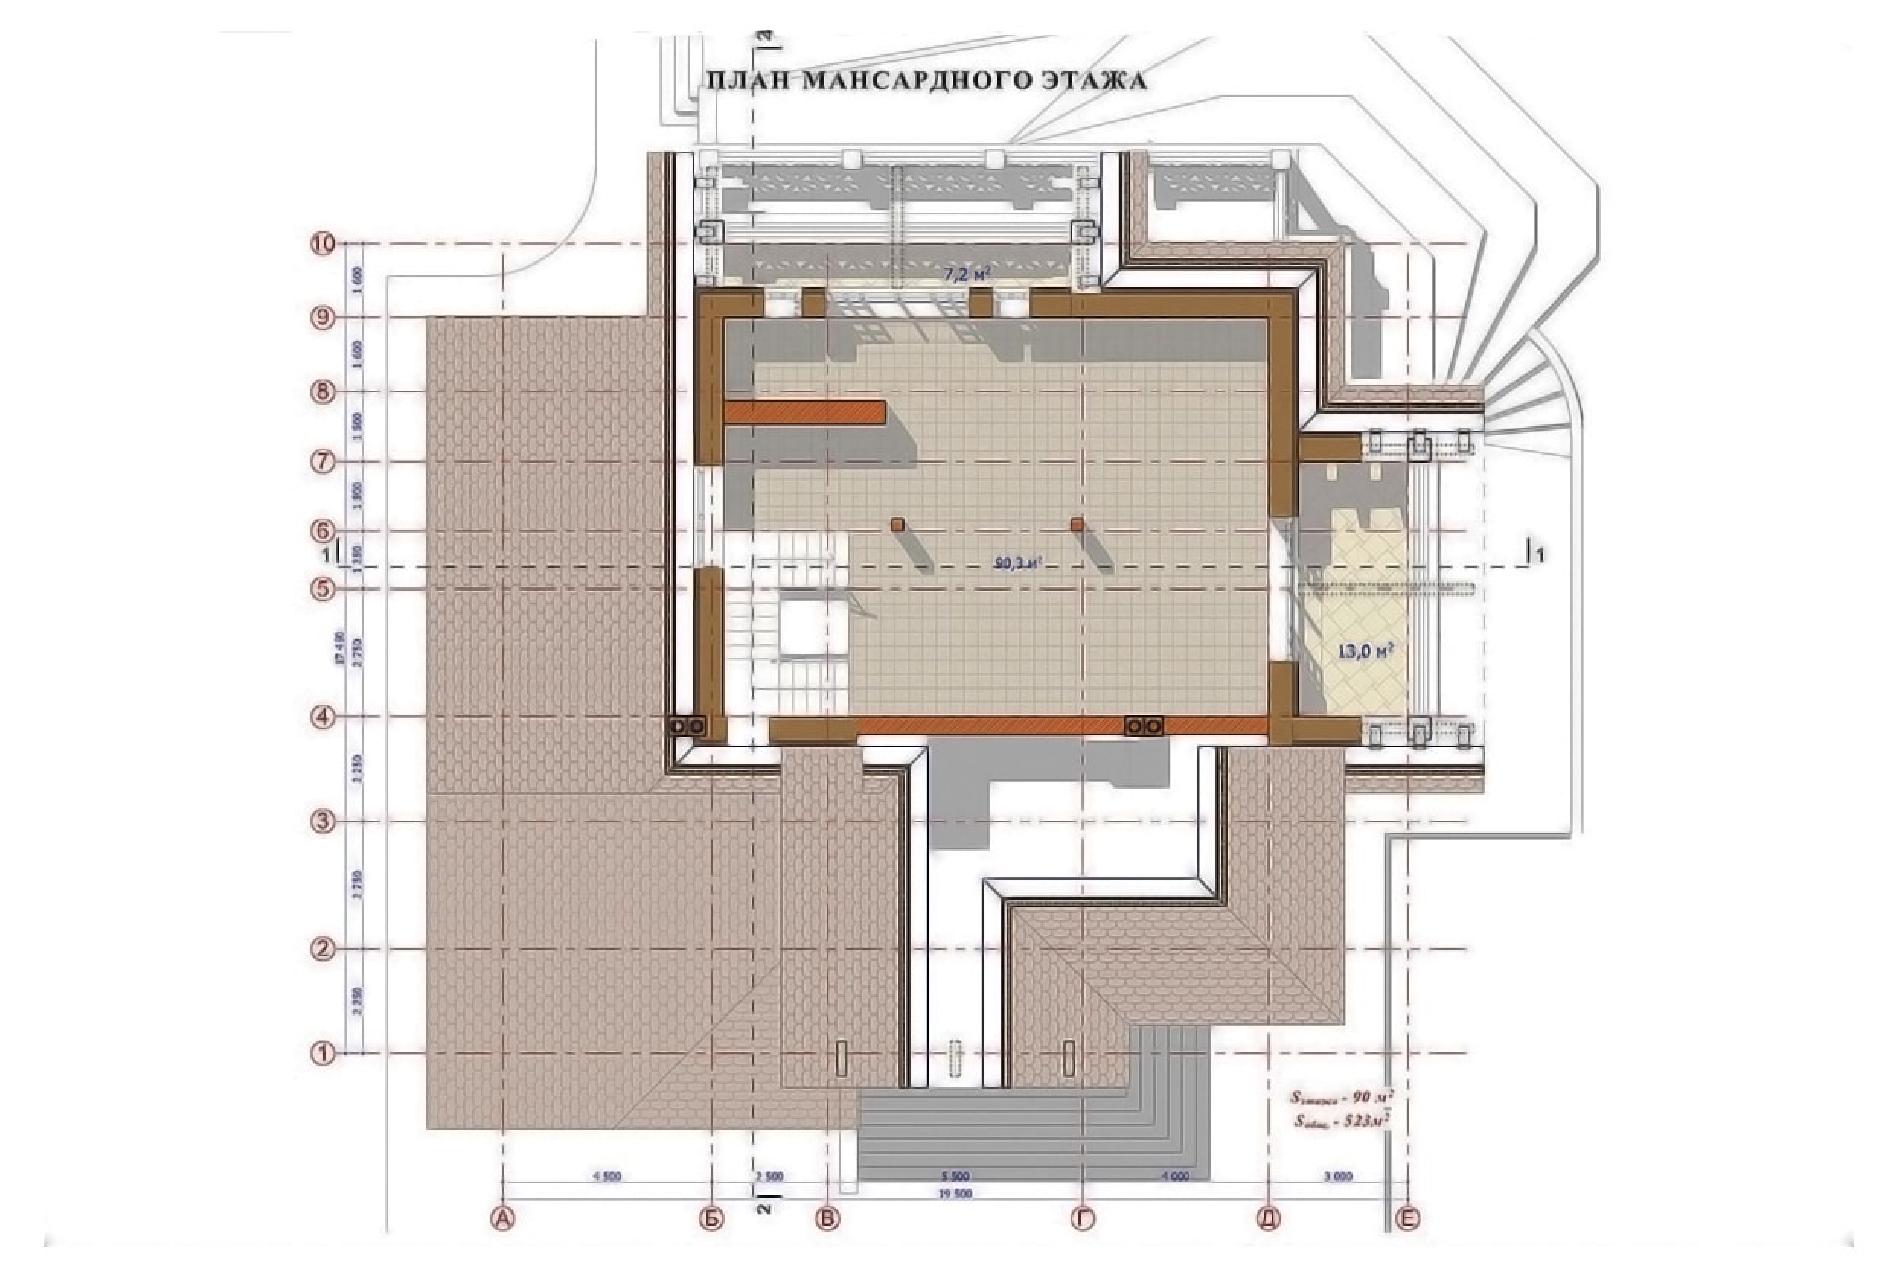 Планировка проекта дома №av-570 av-570_p3-min.jpg